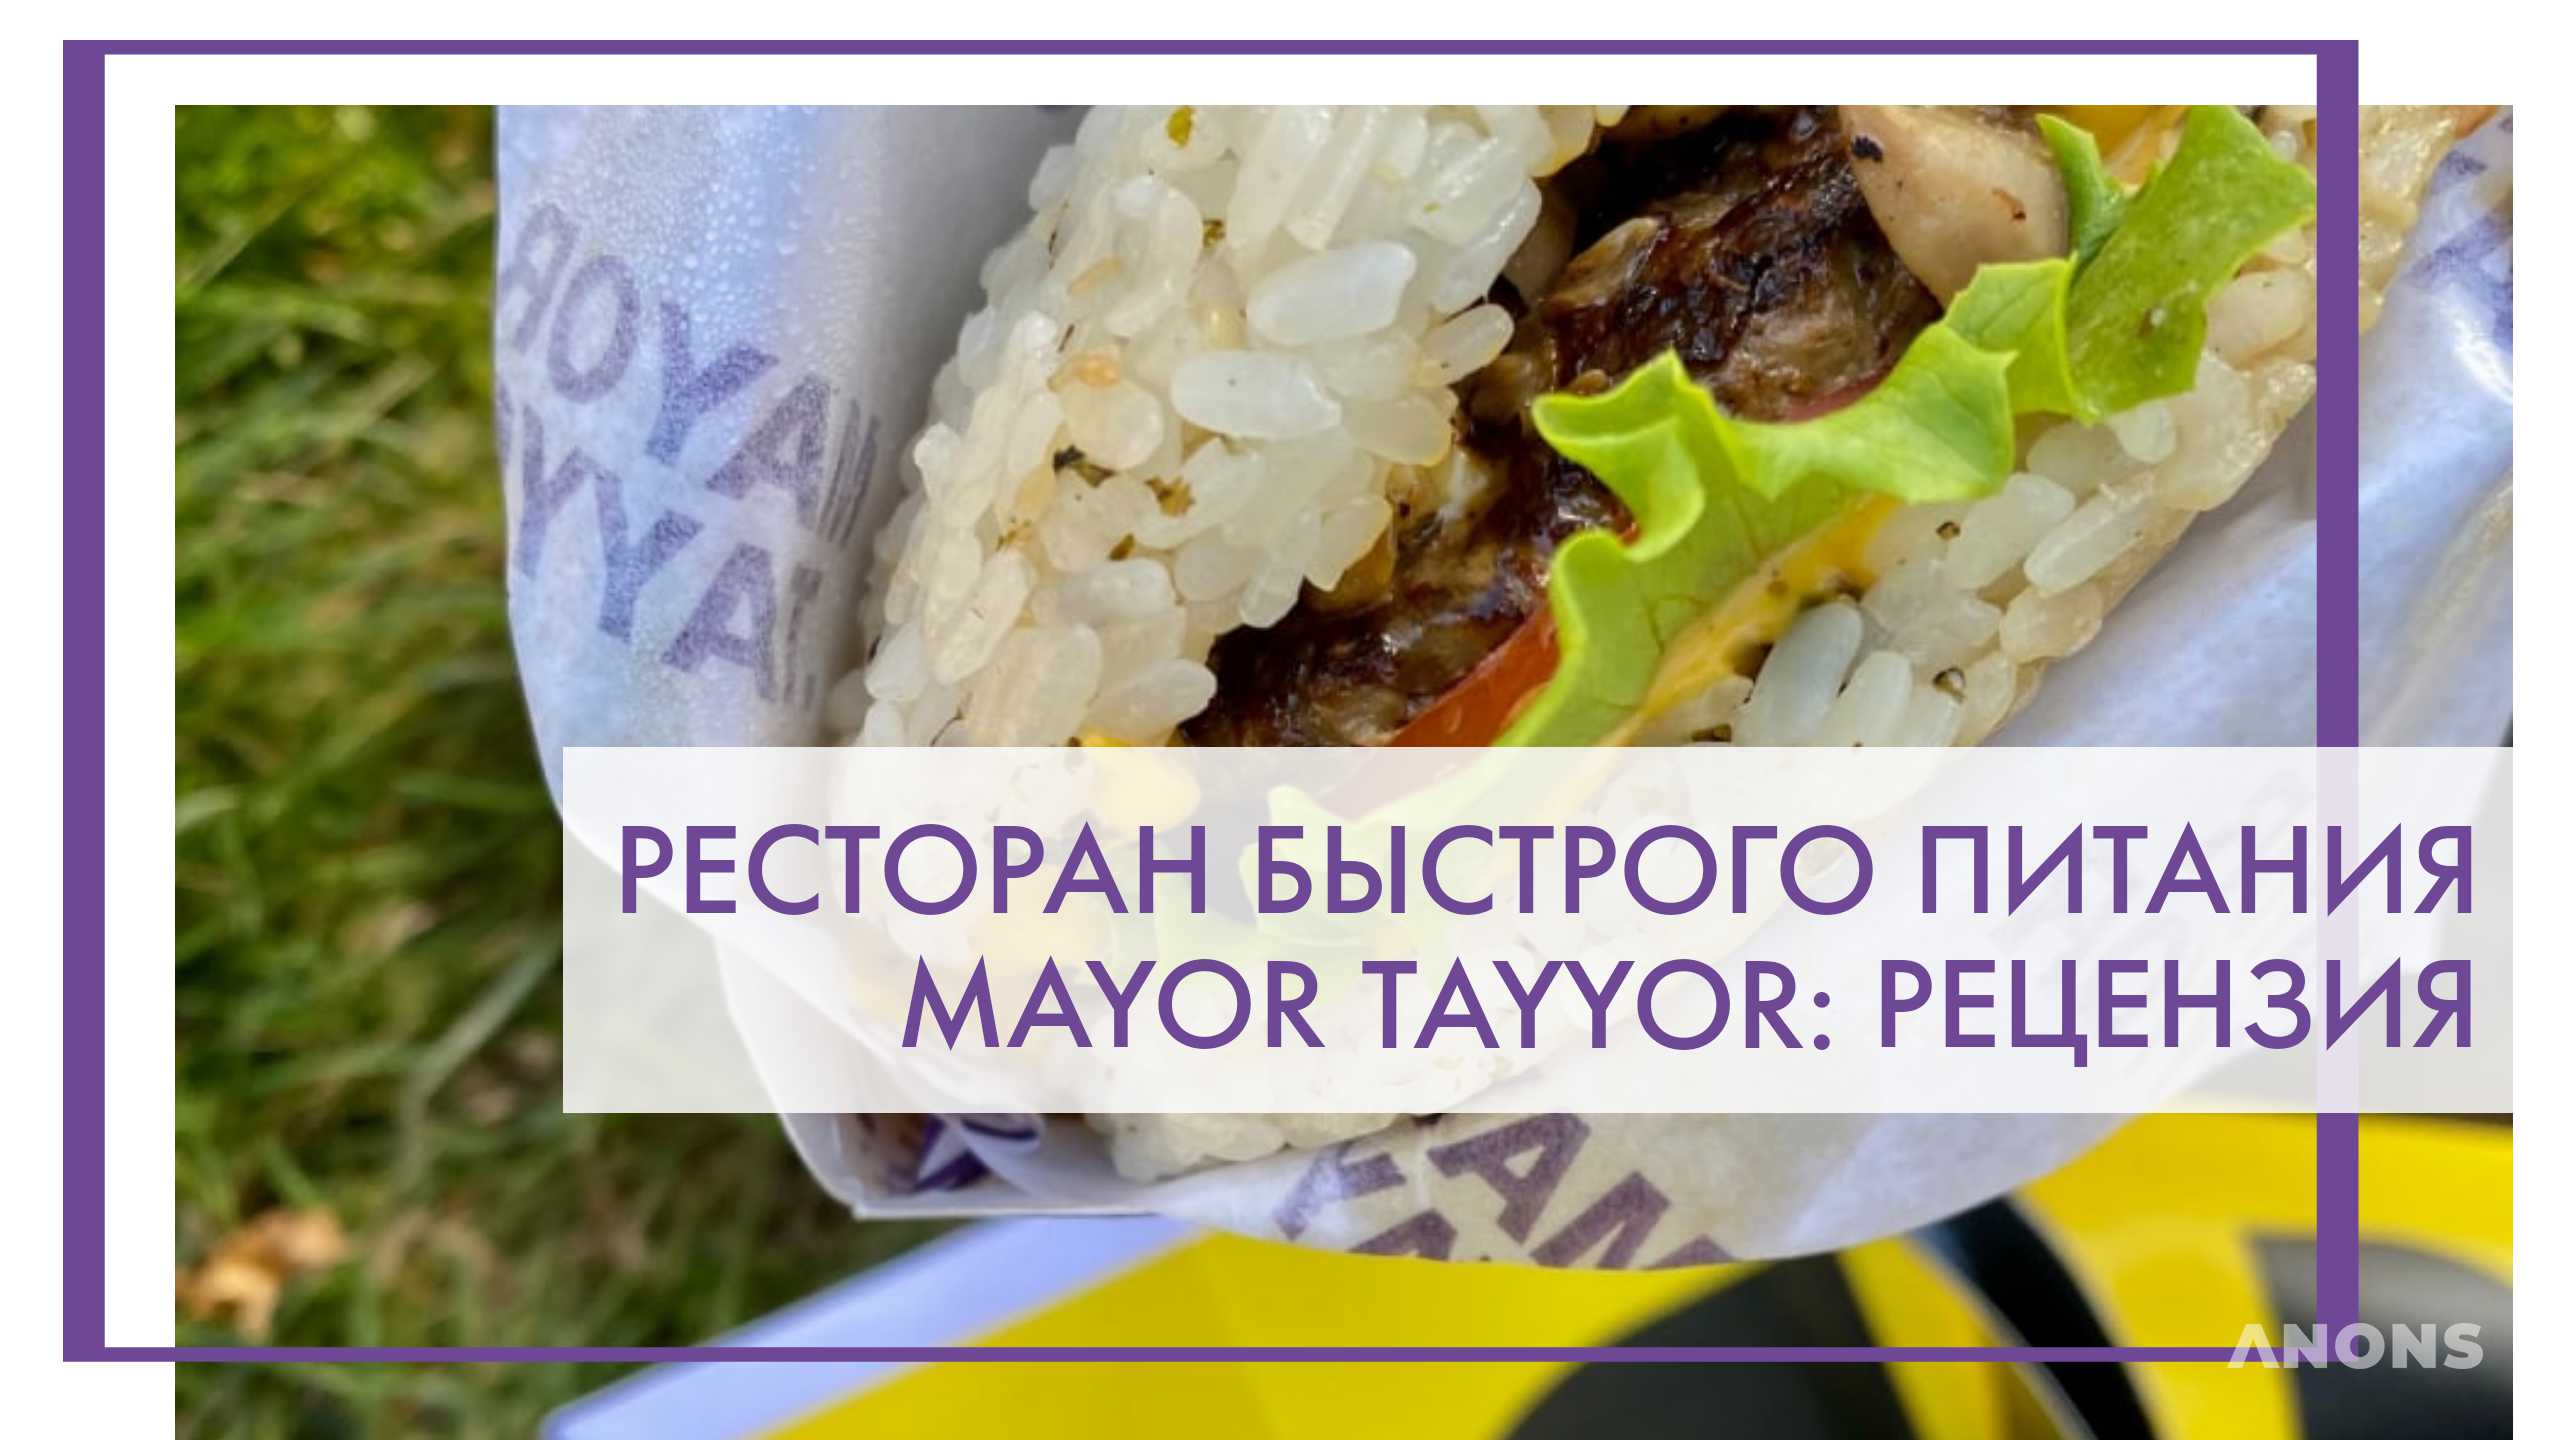 Ресторан быстрого питания Mayor Tayyor - рецензия